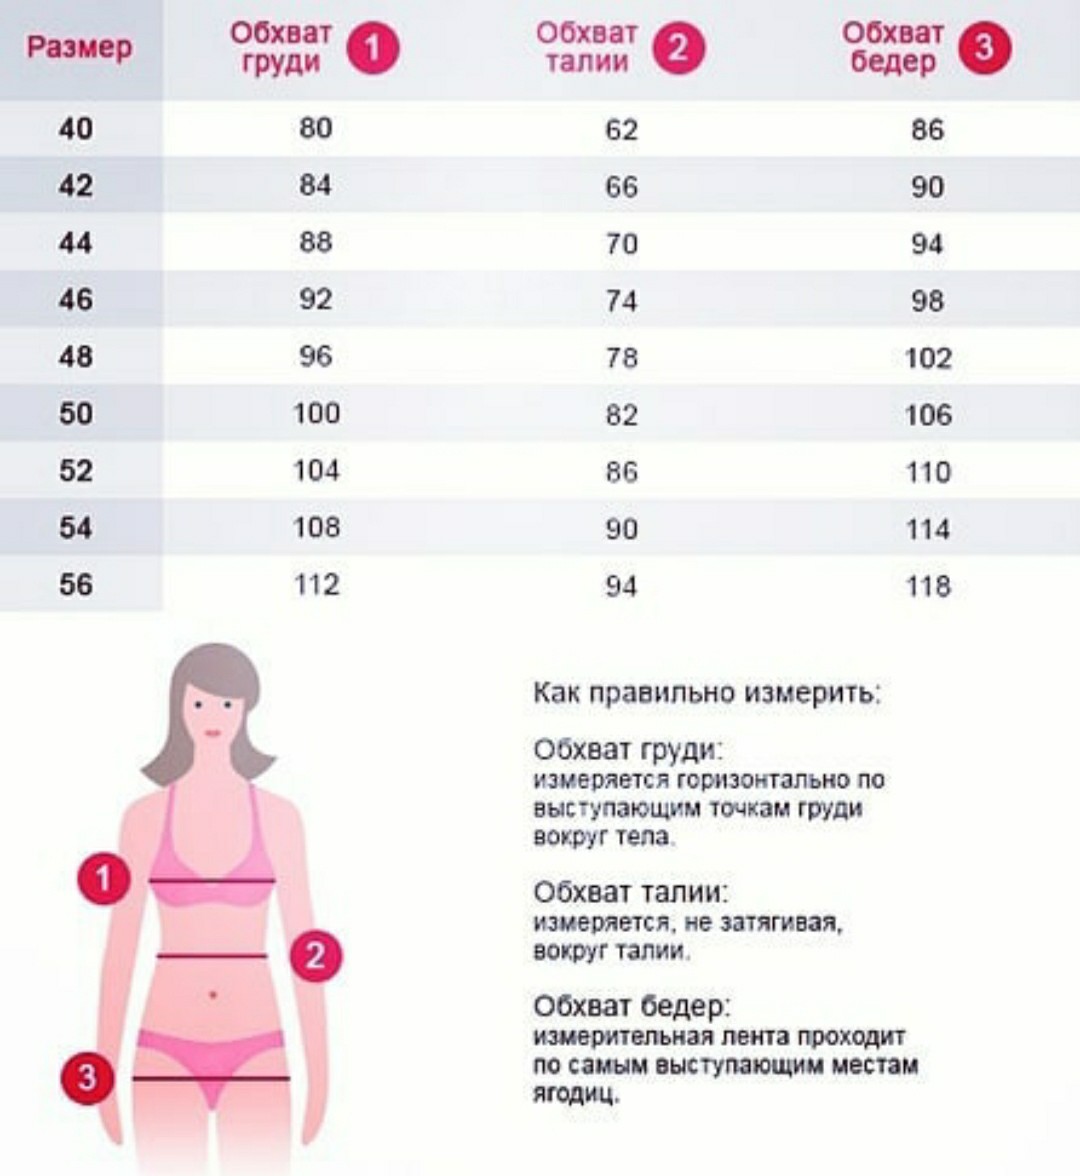 как замерить объем груди правильно у женщин фото 63